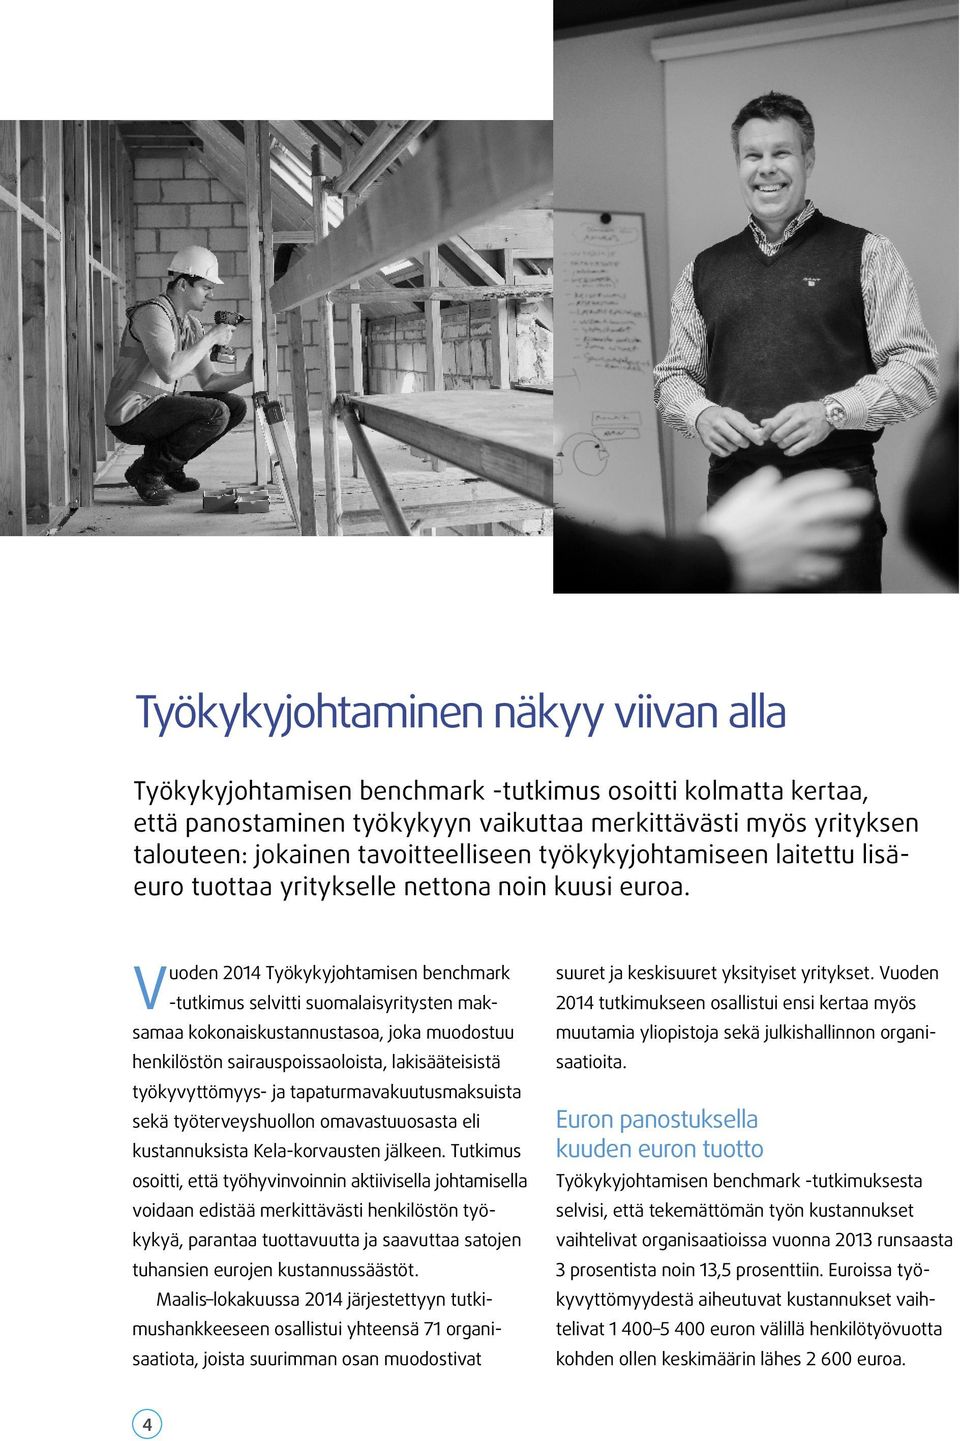 Vuoden 2014 Työkykyjohtamisen benchmark -tutkimus selvitti suomalaisyritysten maksamaa kokonaiskustannustasoa, joka muodostuu henkilöstön sairauspoissaoloista, lakisääteisistä työkyvyttömyys- ja